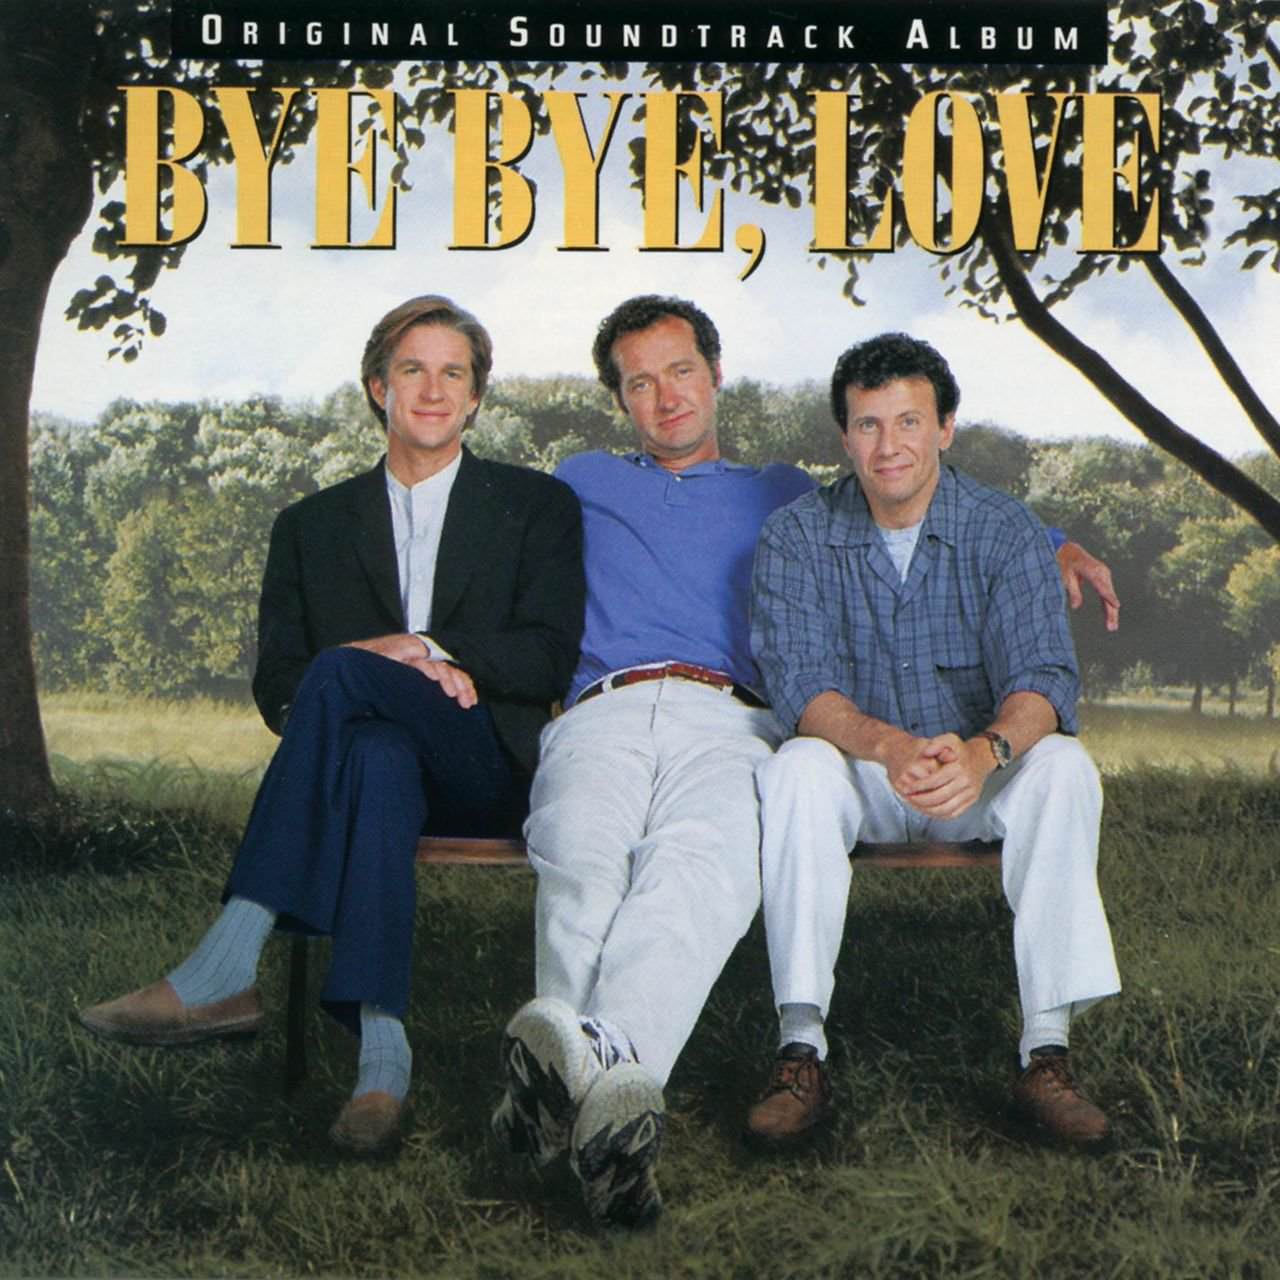 Bye Bye, Love (Original Soundtrack Album) cover